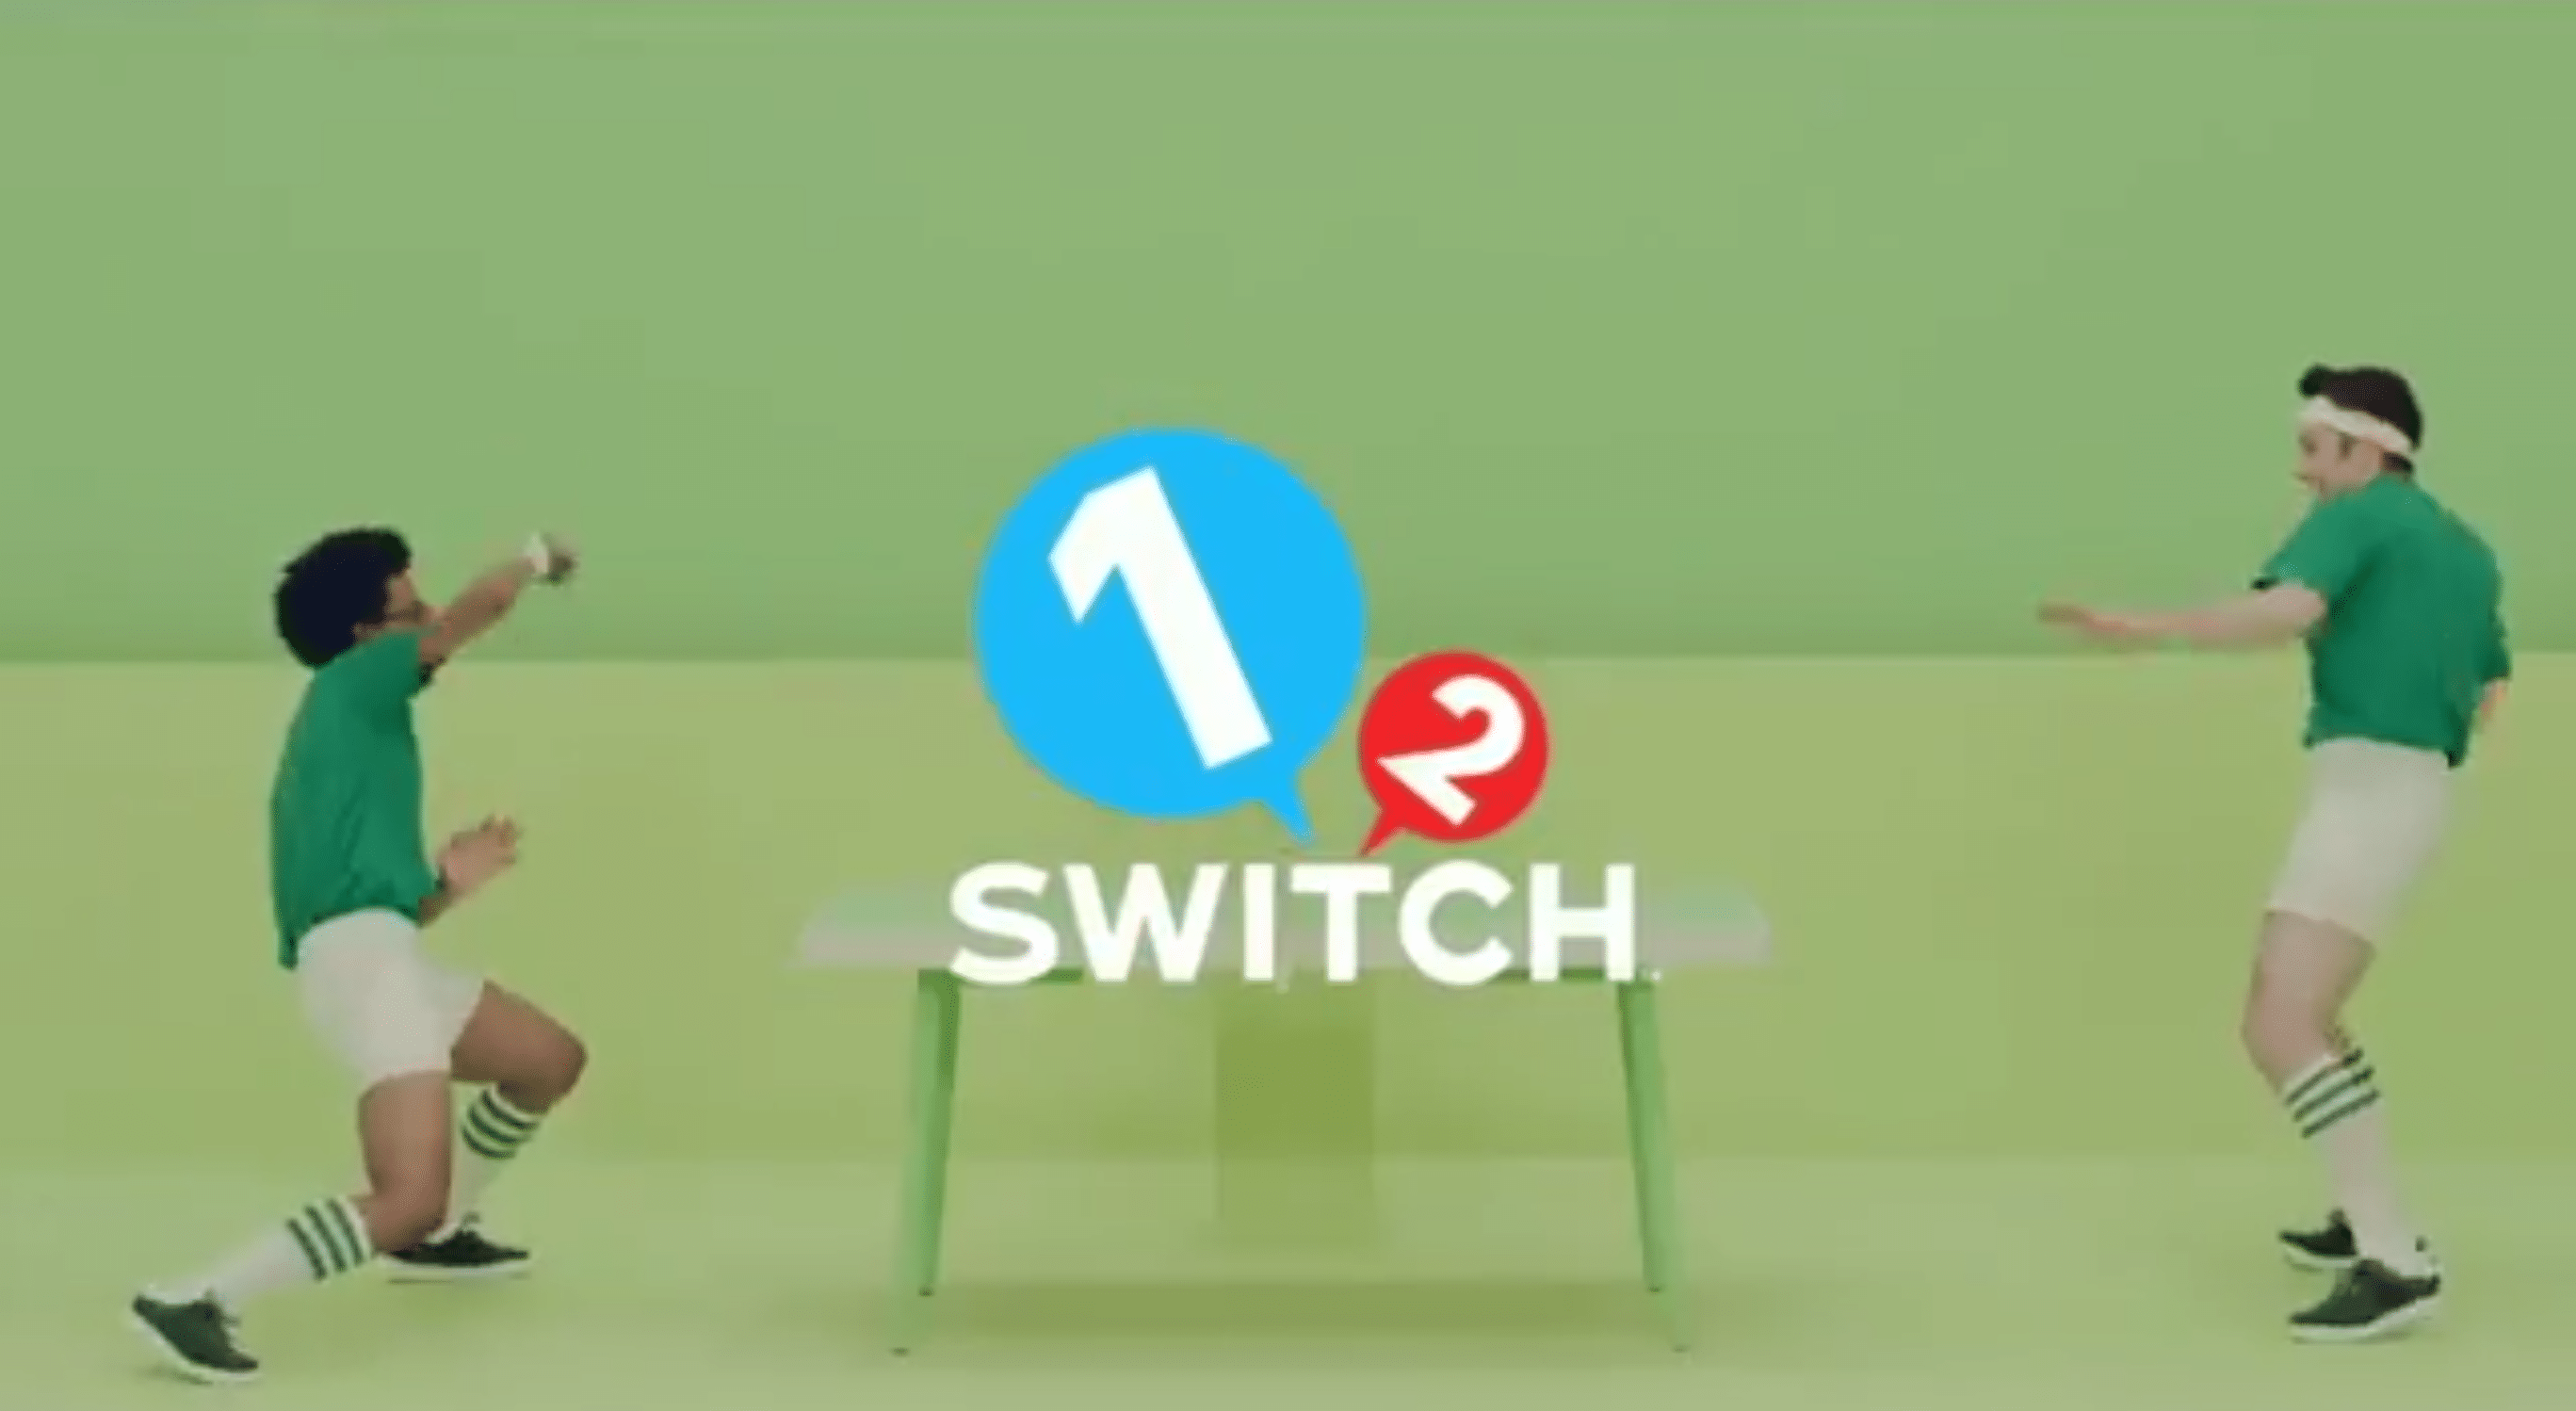 Nintendo anuncia 1 2 Switch, un juego de lanzamiento de Joy-Con Party -GamersRD